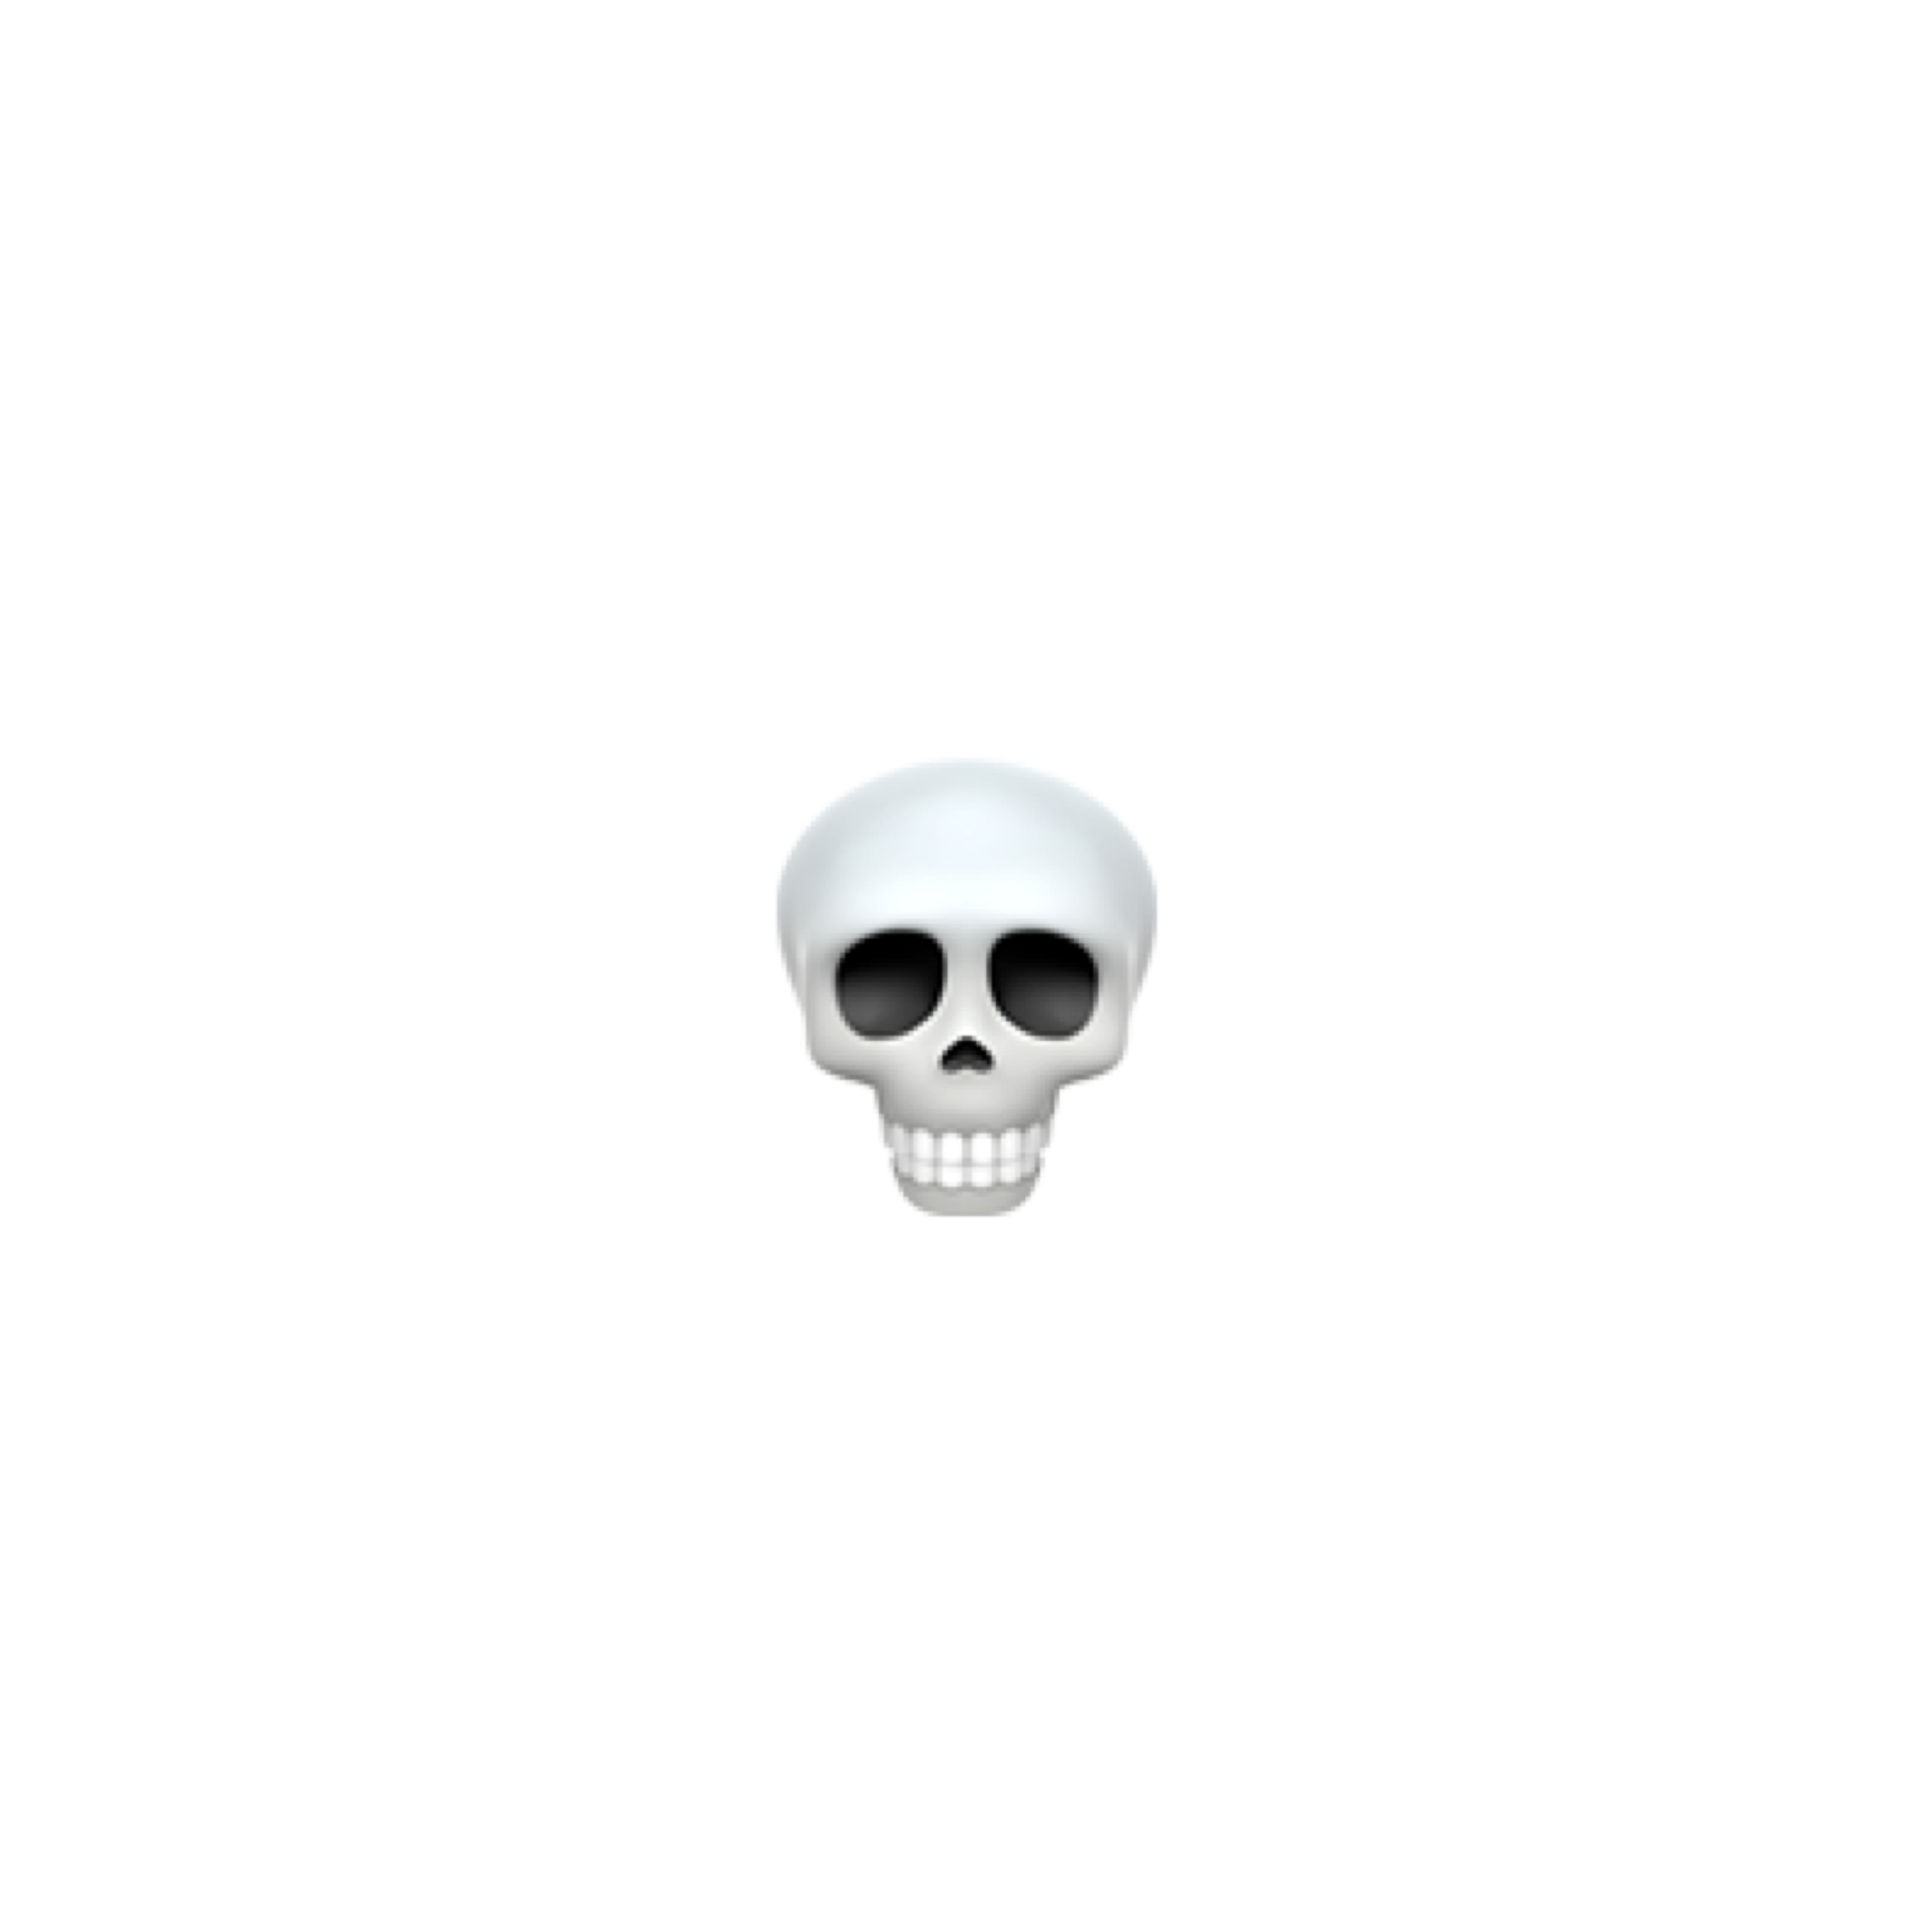 Skull Emoji PNG Free Image